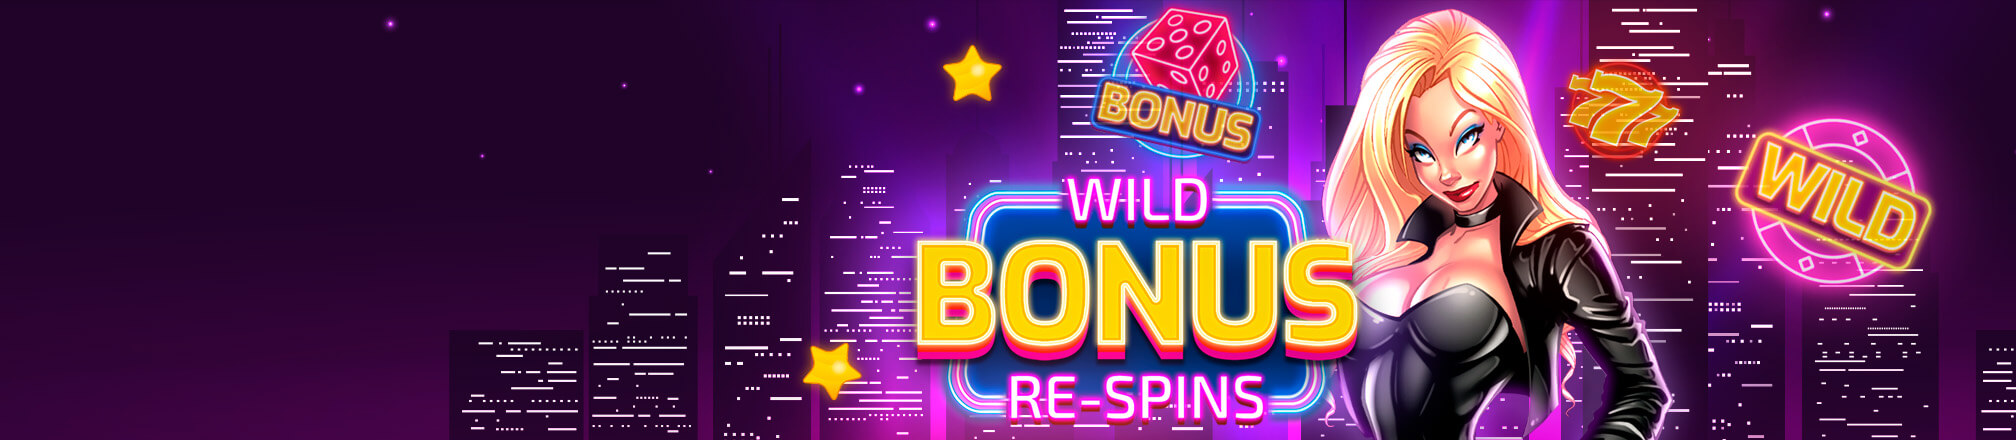 Wild Bonus Re-Spins